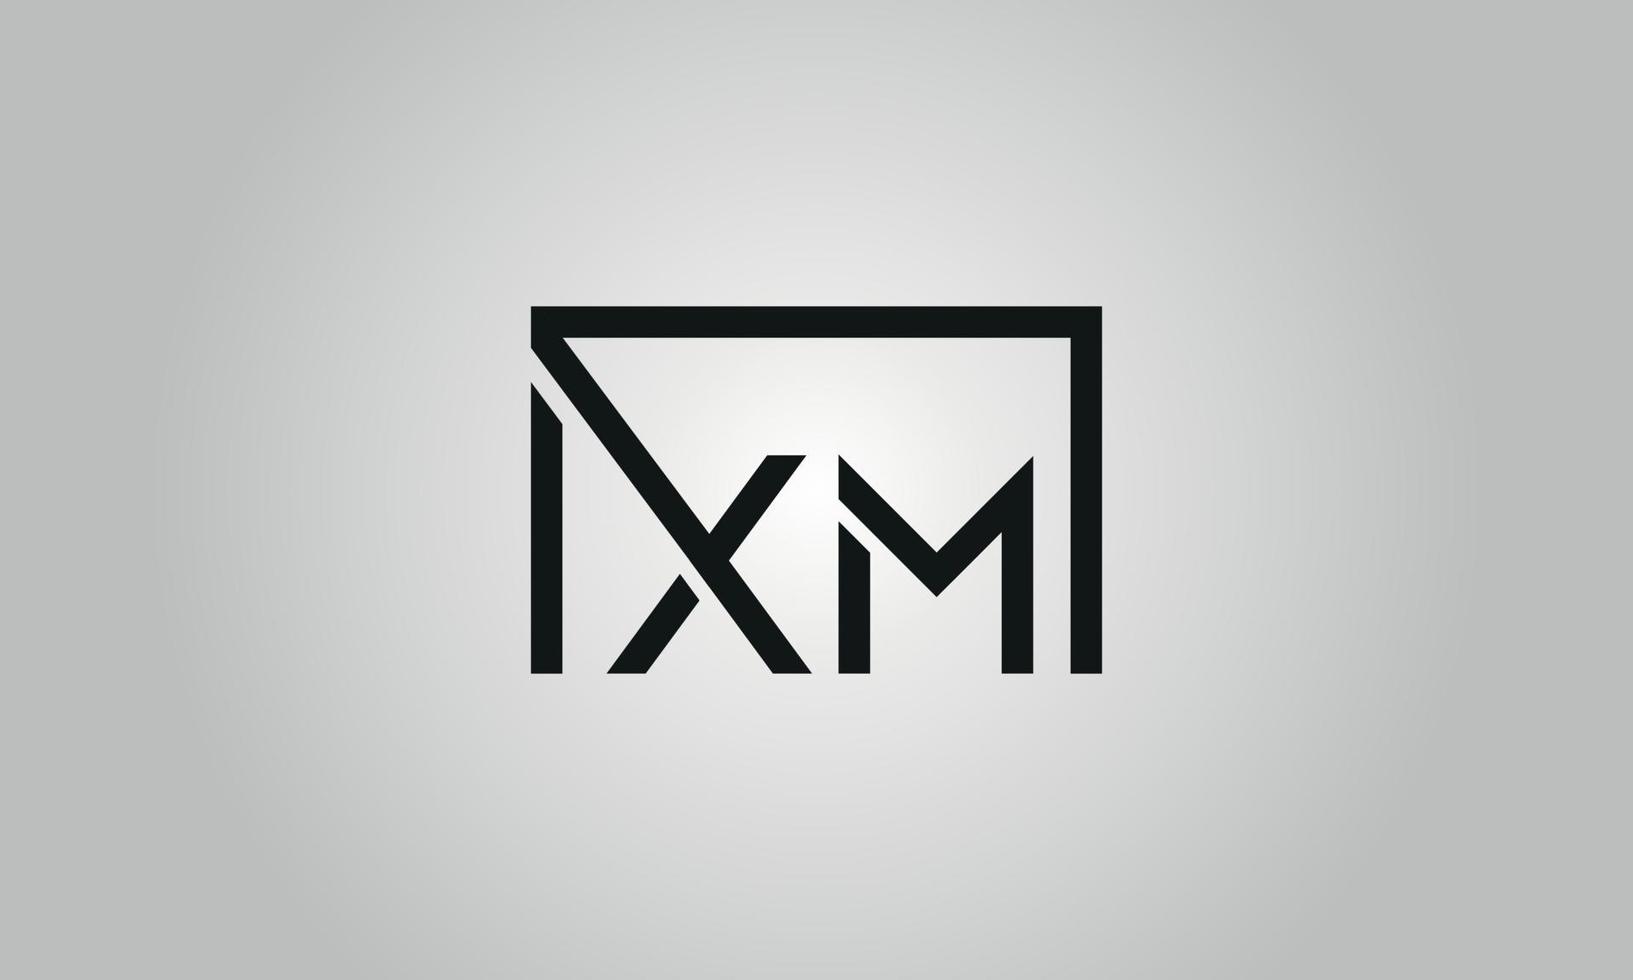 création de logo lettre xm. logo xm avec forme carrée dans le modèle vectoriel gratuit de couleurs noires.